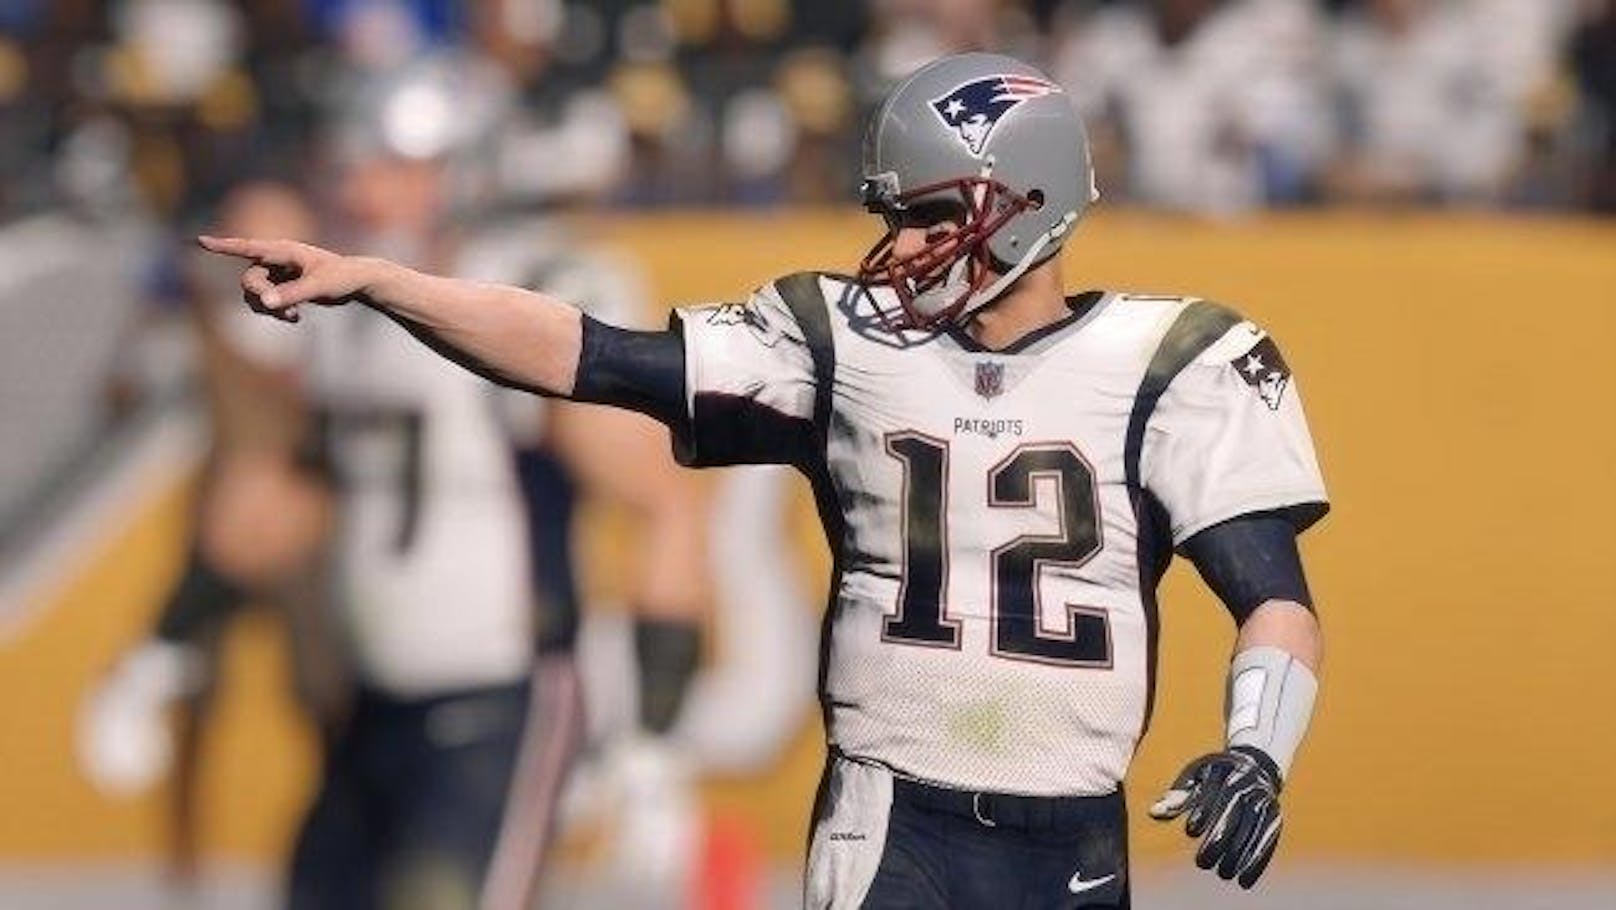 Und jetzt entschuldigt mich bitte, ich muss jetzt Tom Brady mal zeigen, wie man richtig Football spielt.